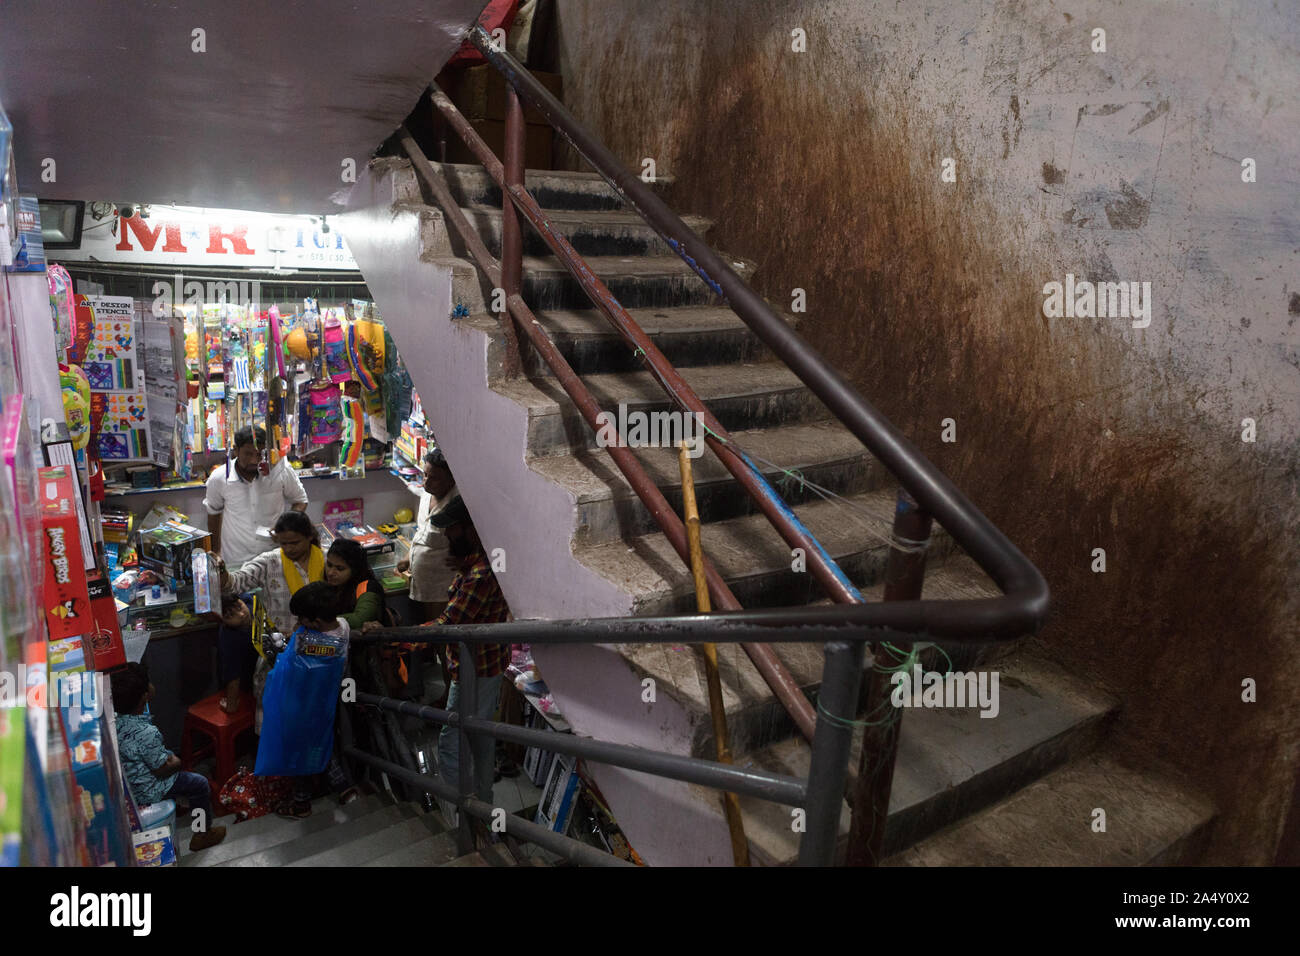 Eine Wand befleckt durch paan Speichel innerhalb einer populären Shopping Plaza in Hyderabad, Indien. Wenn paan Speichel versiegt ist es sehr schwierig, aus der s zu entfernen. Stockfoto